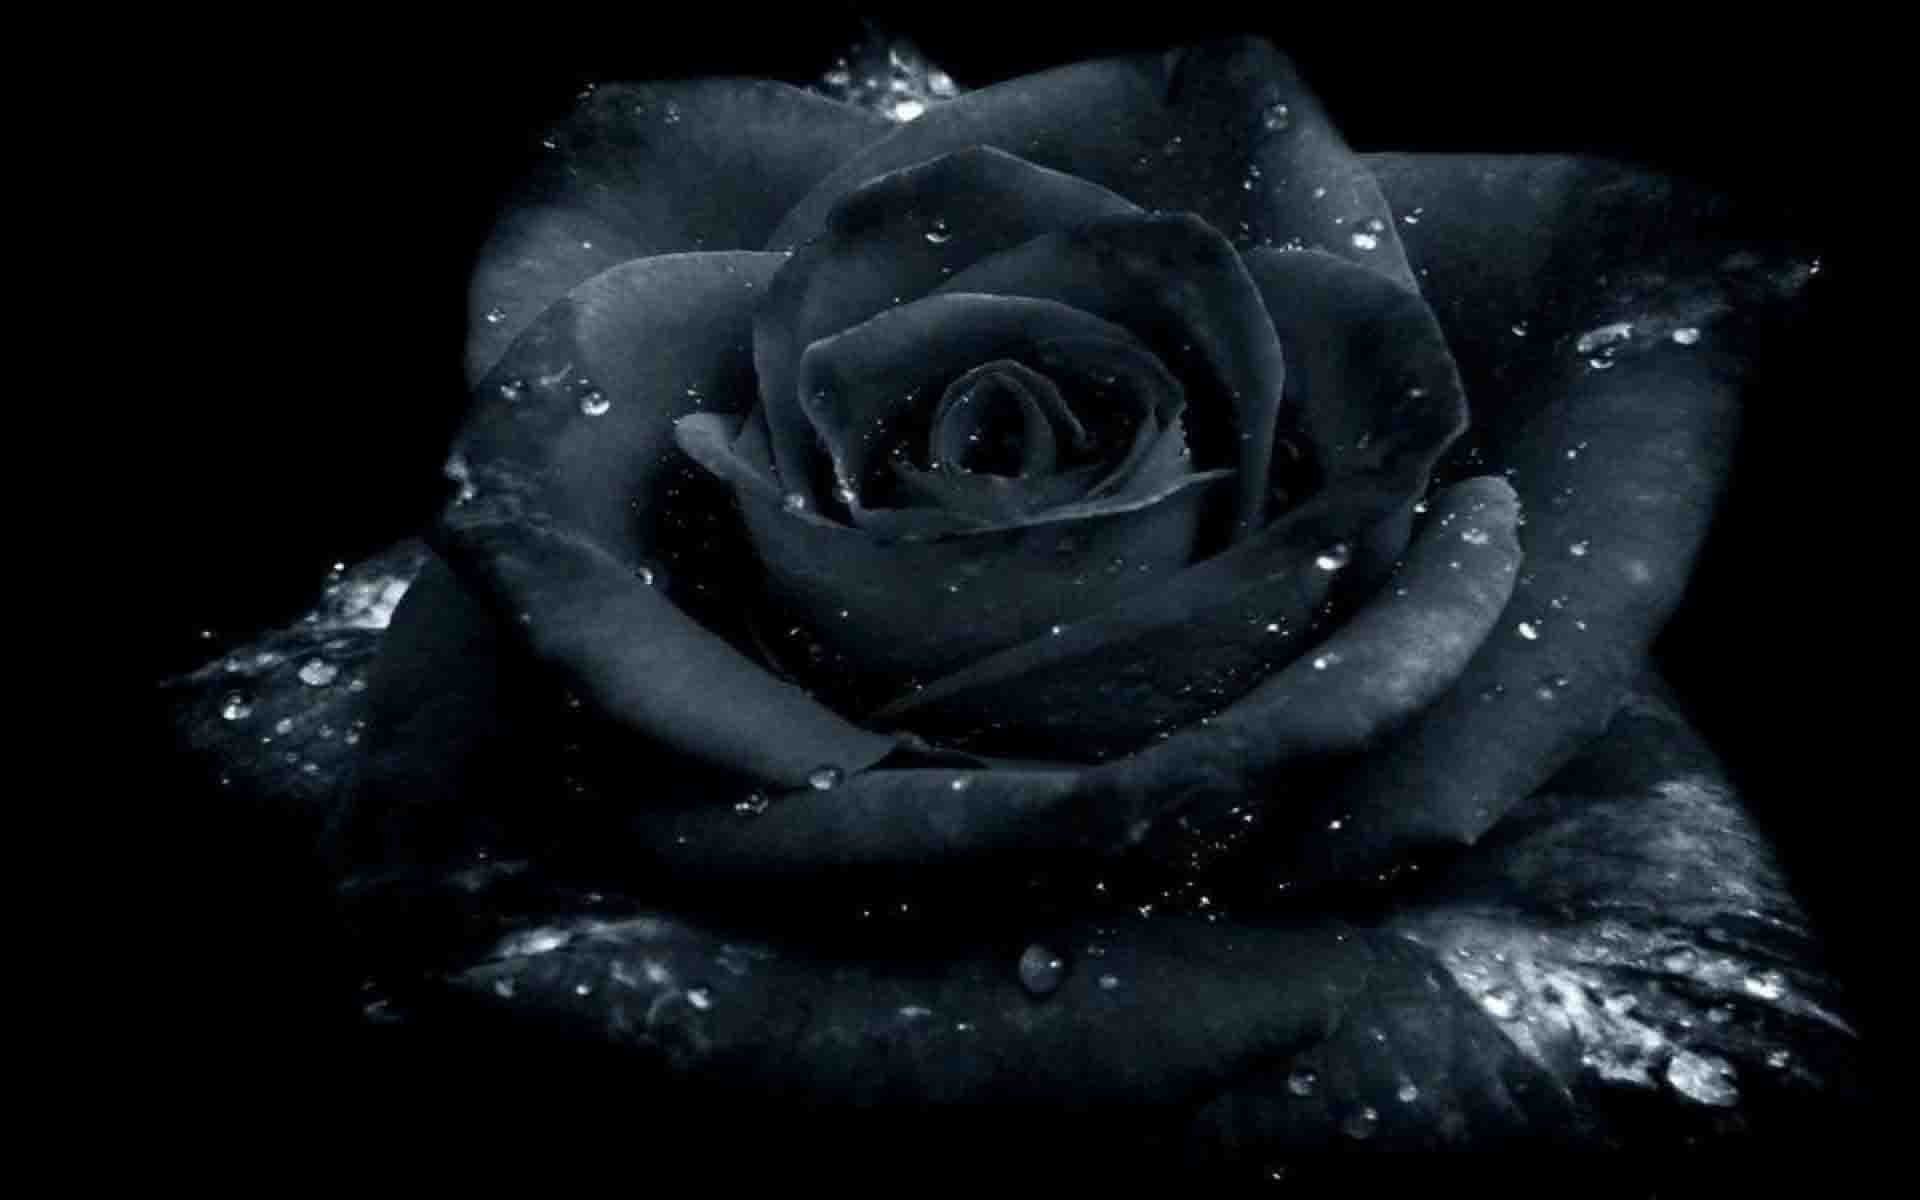 Hình nền đen hoa hồng: Hình nền đen với hoa hồng sẽ mang đến cho bạn một trải nghiệm tuyệt vời về cảm giác hòa mình với thiên nhiên. Màu sắc đen của nền khiến hoa hồng trở nên quý phái và đầy ấn tượng, giúp bạn tạo ra một phong cách thẩm mỹ độc đáo và xinh đẹp.